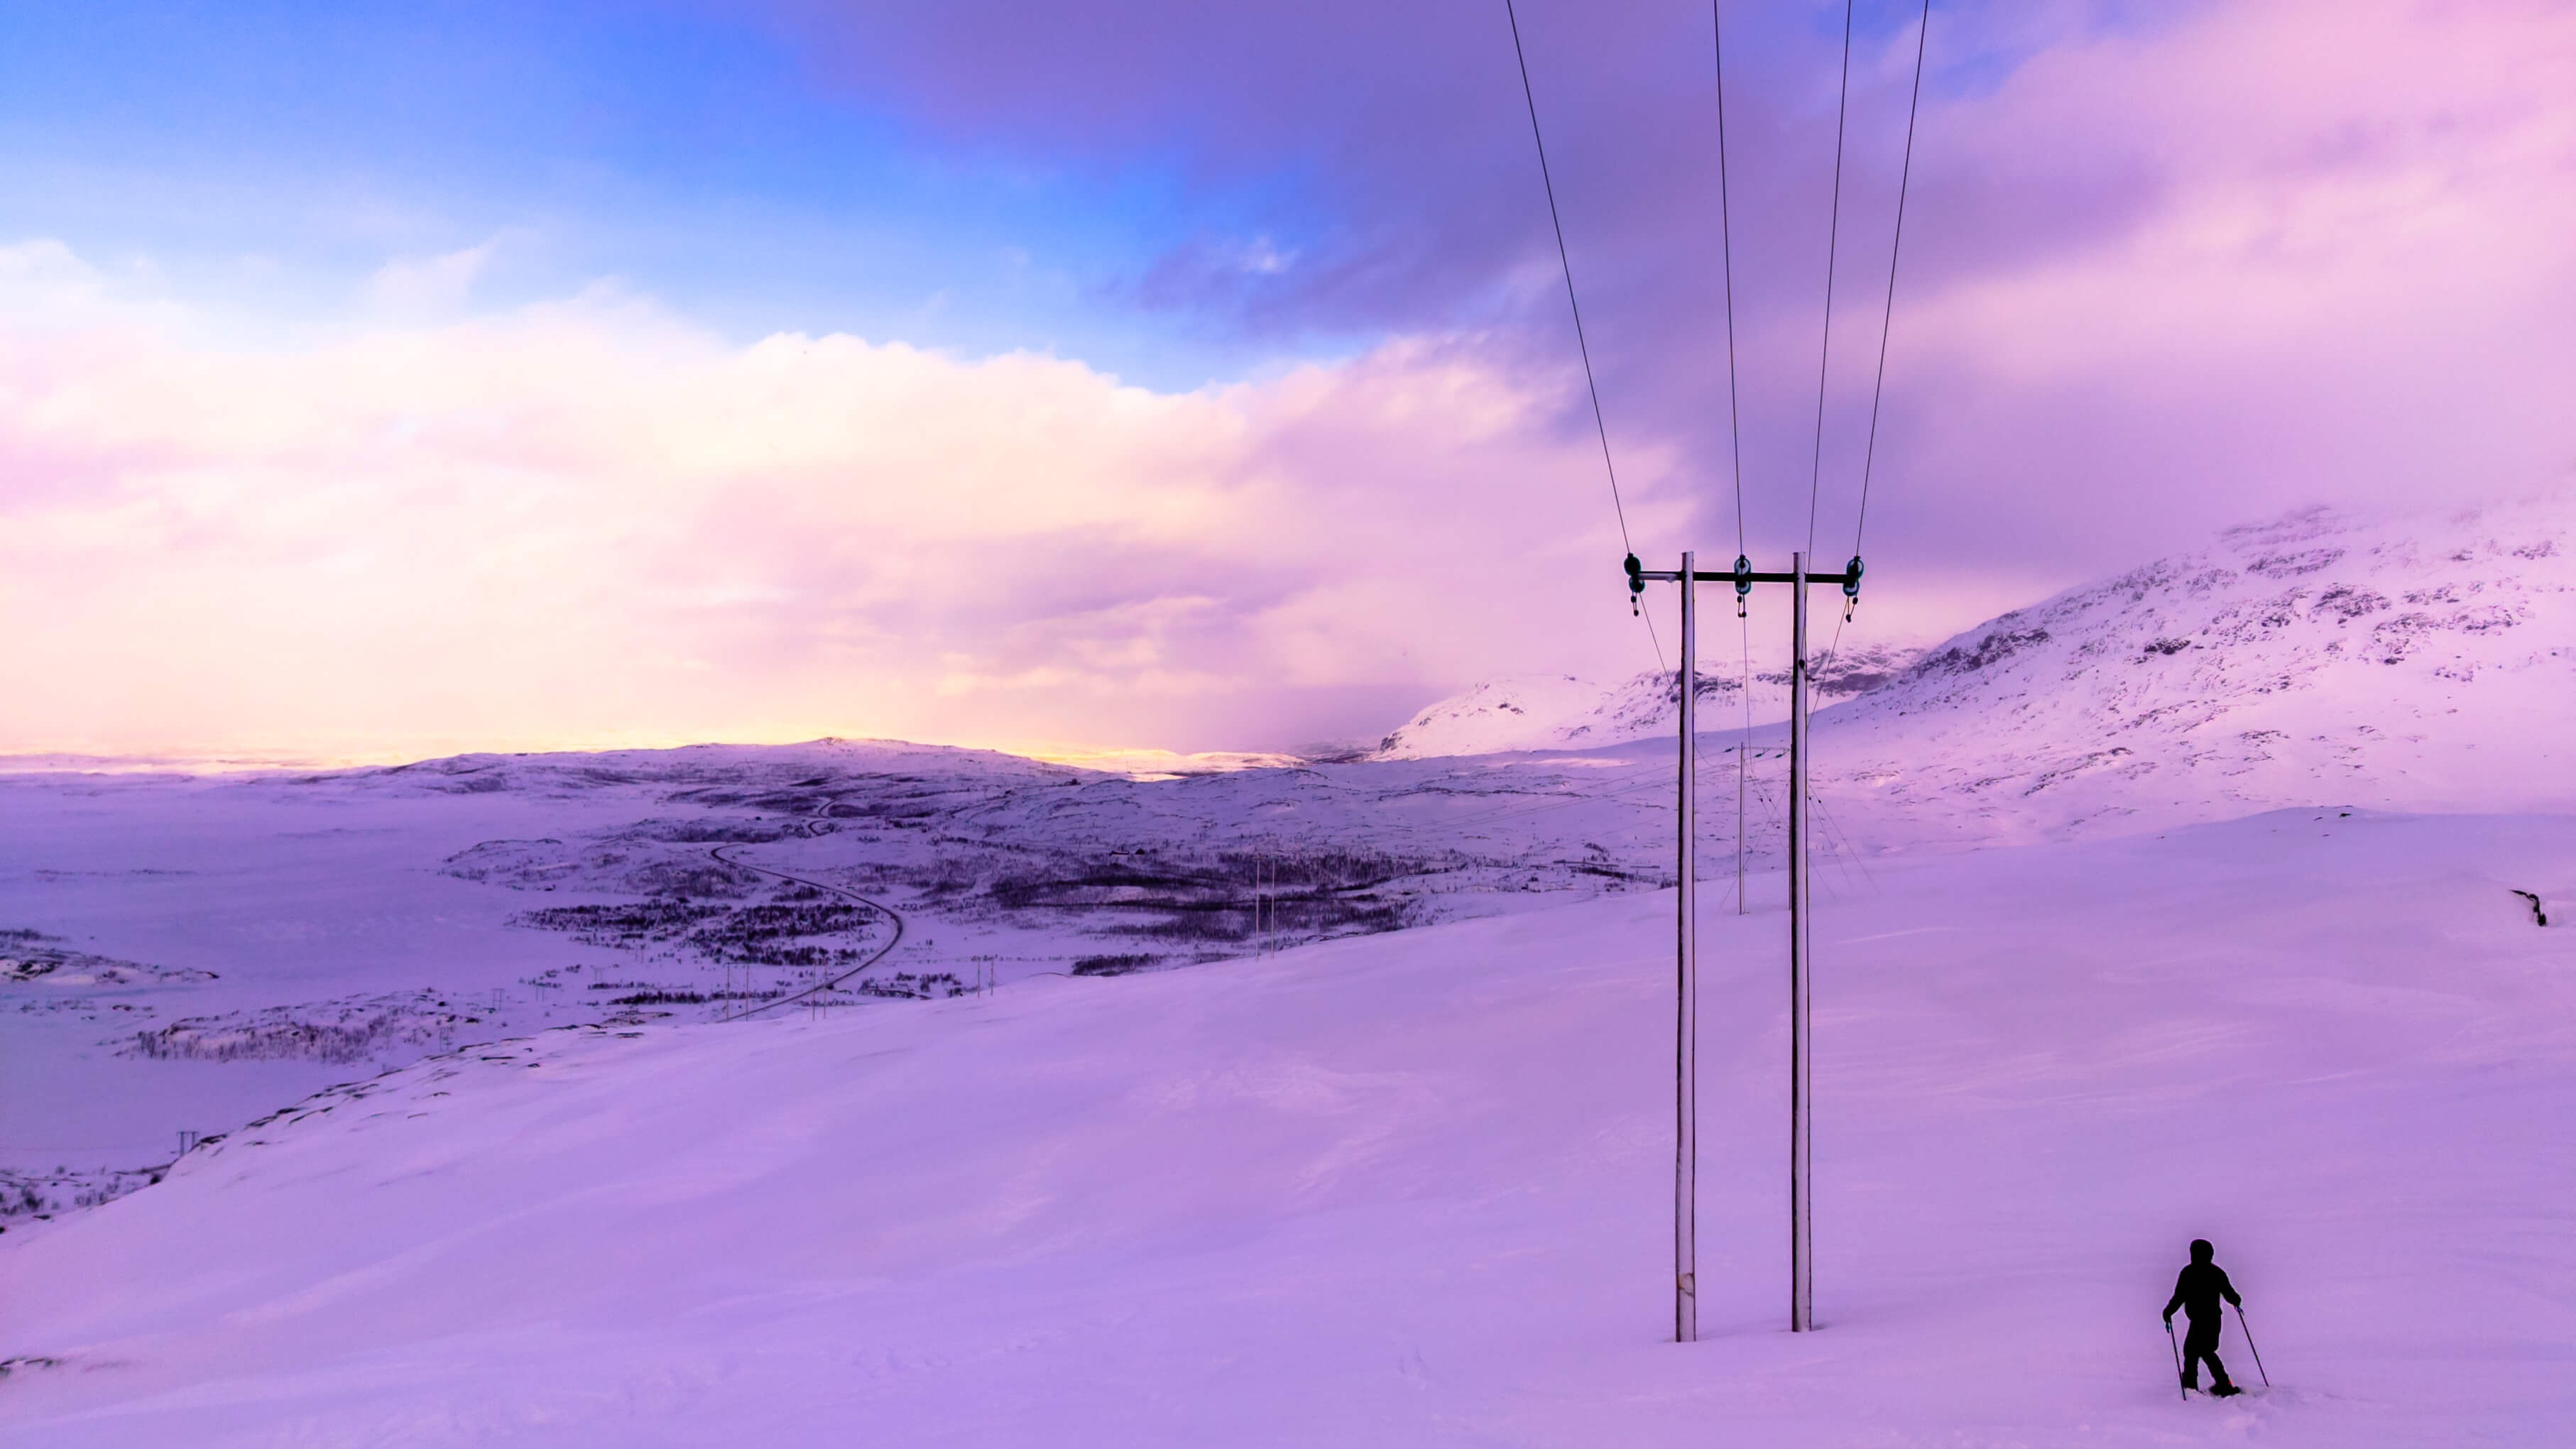 En bild från en snöig bergstopp där en person skidrar mot en elstolpe